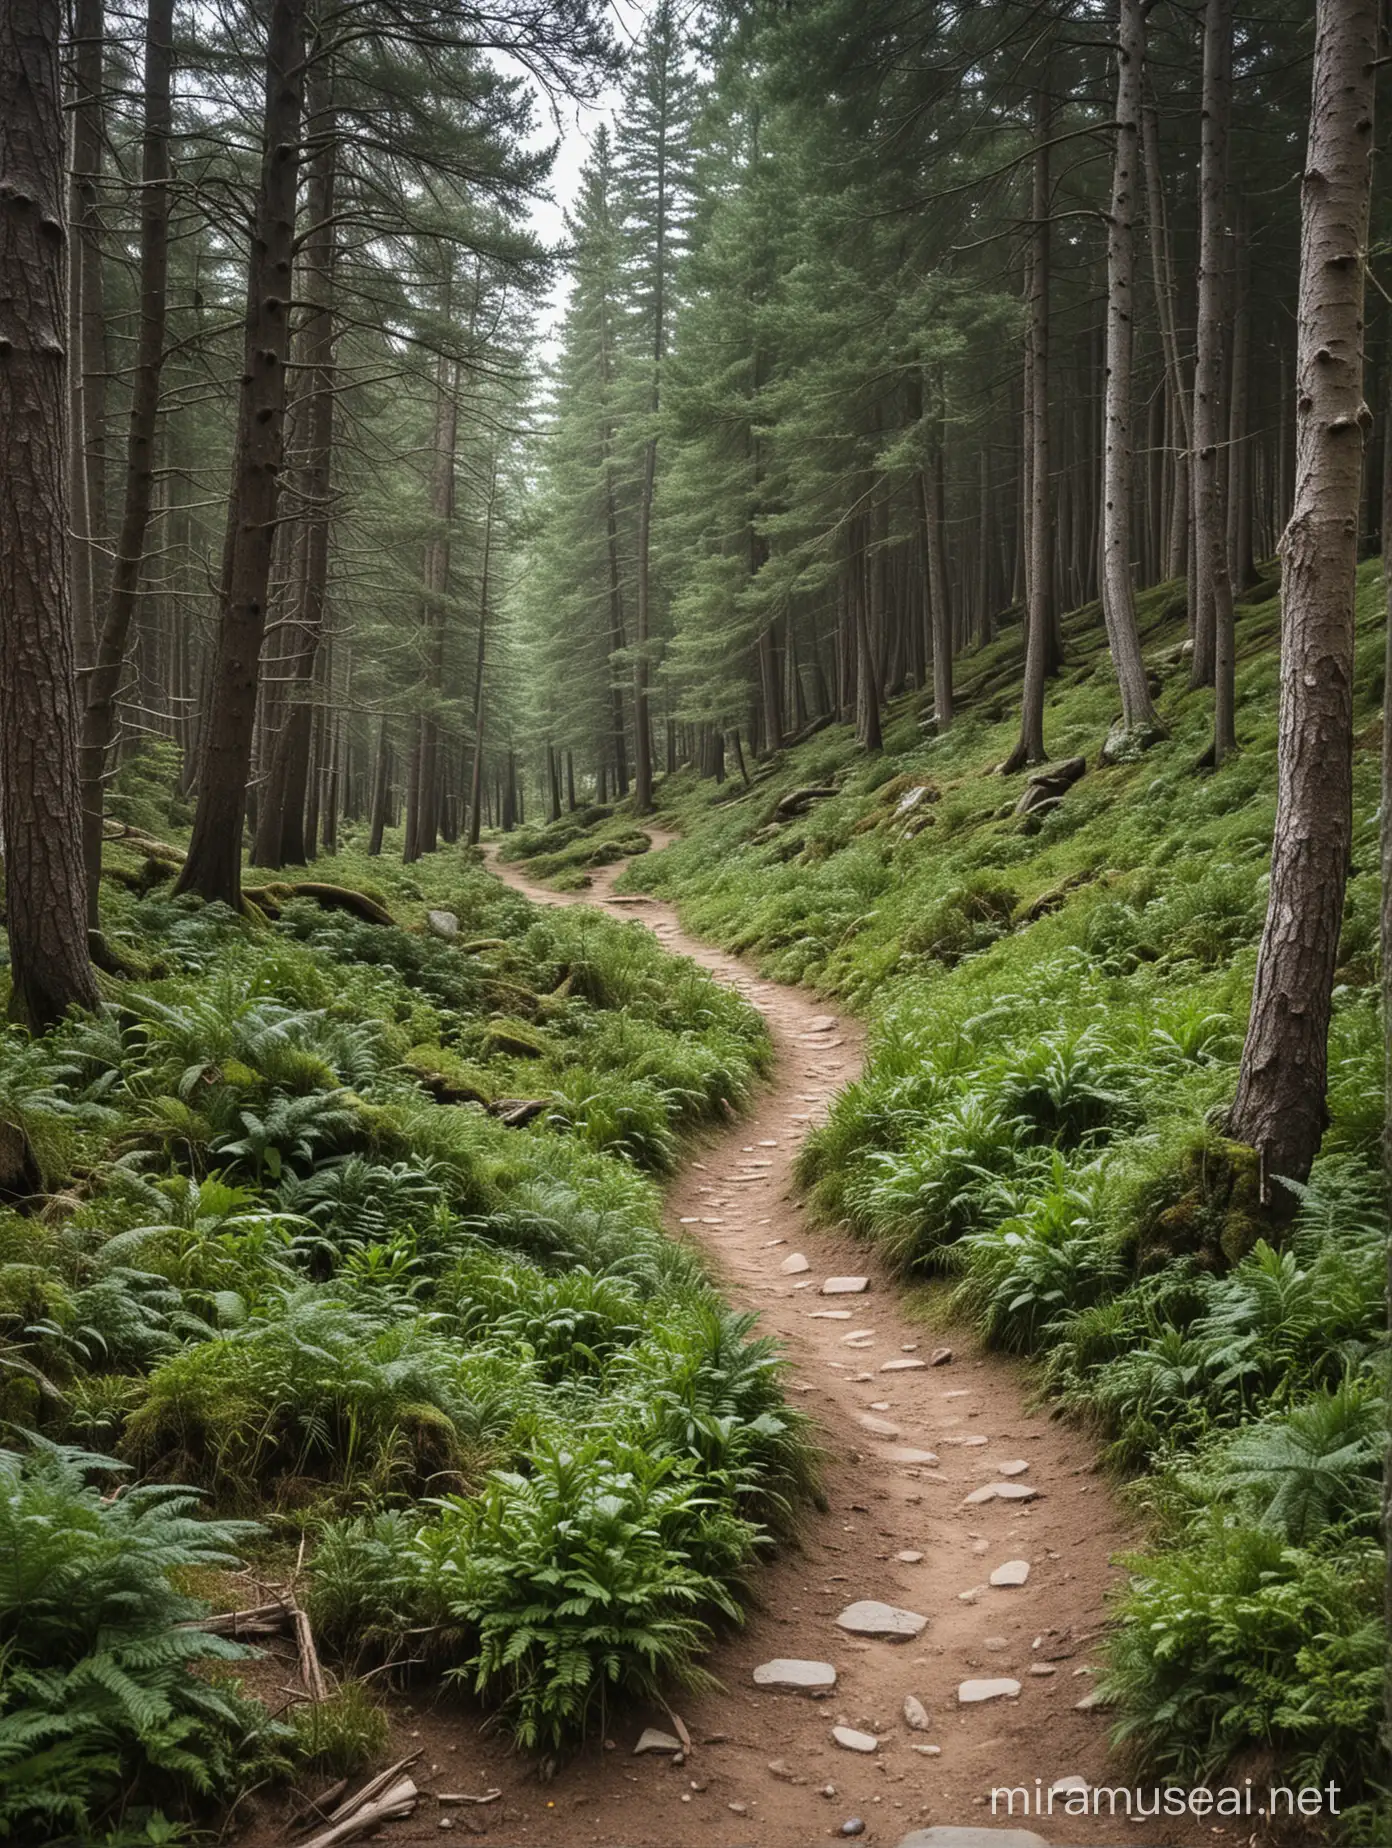 A narrow dirt path winding through an alpine forest. 